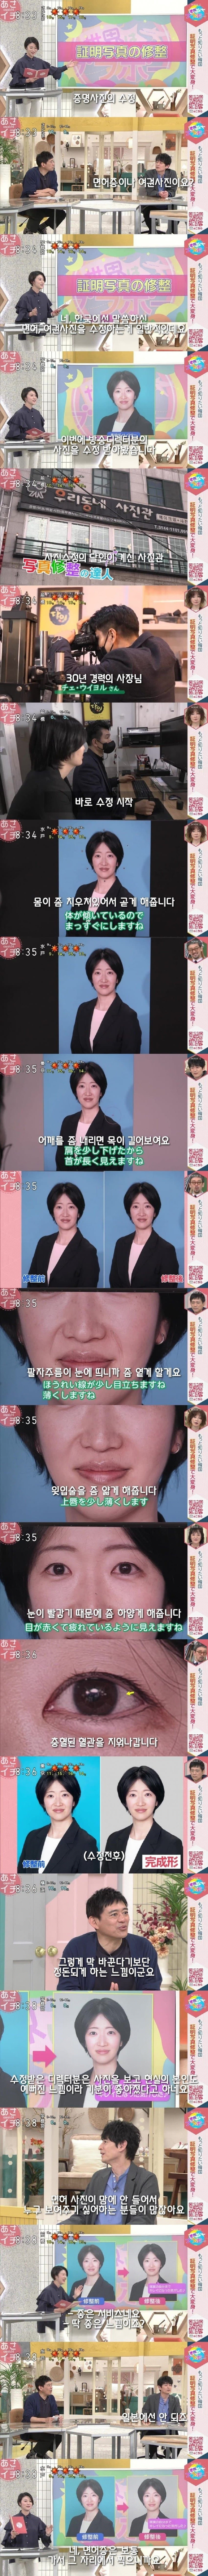 한국에서 증명사진 찍어본 일본사람